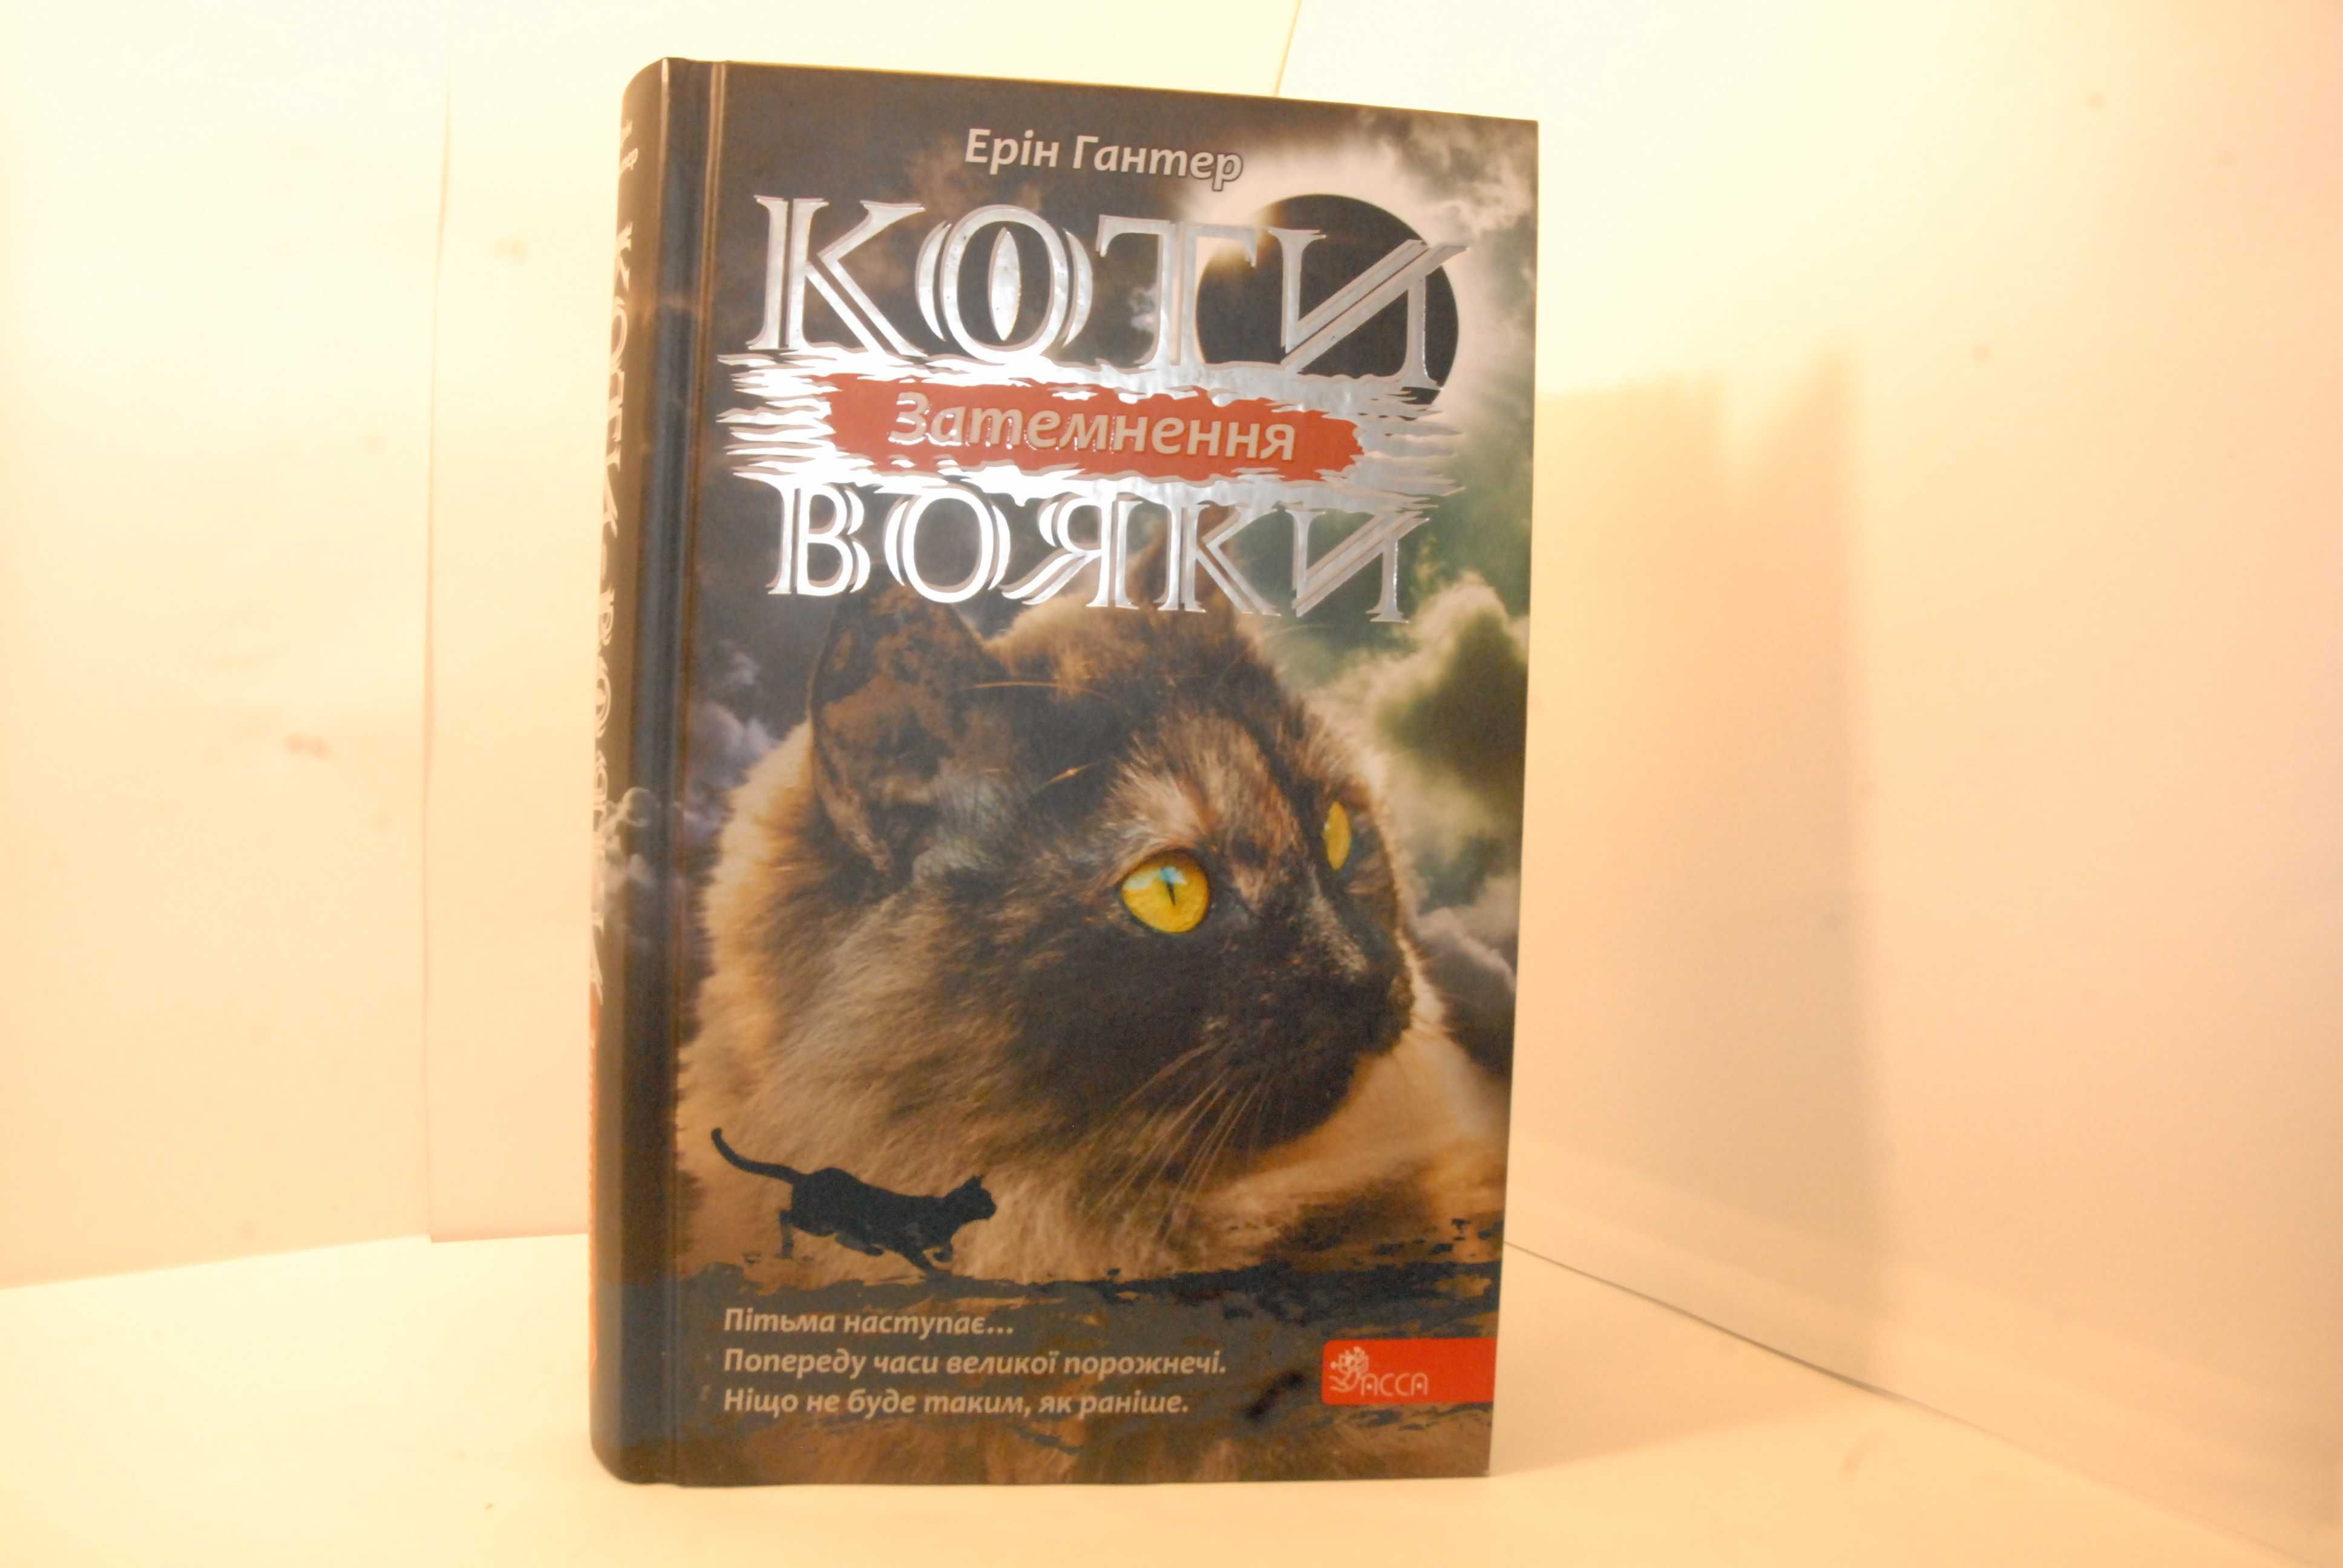 Книга "Коти вояки. Затемнення". Автор: Ерін Гантер